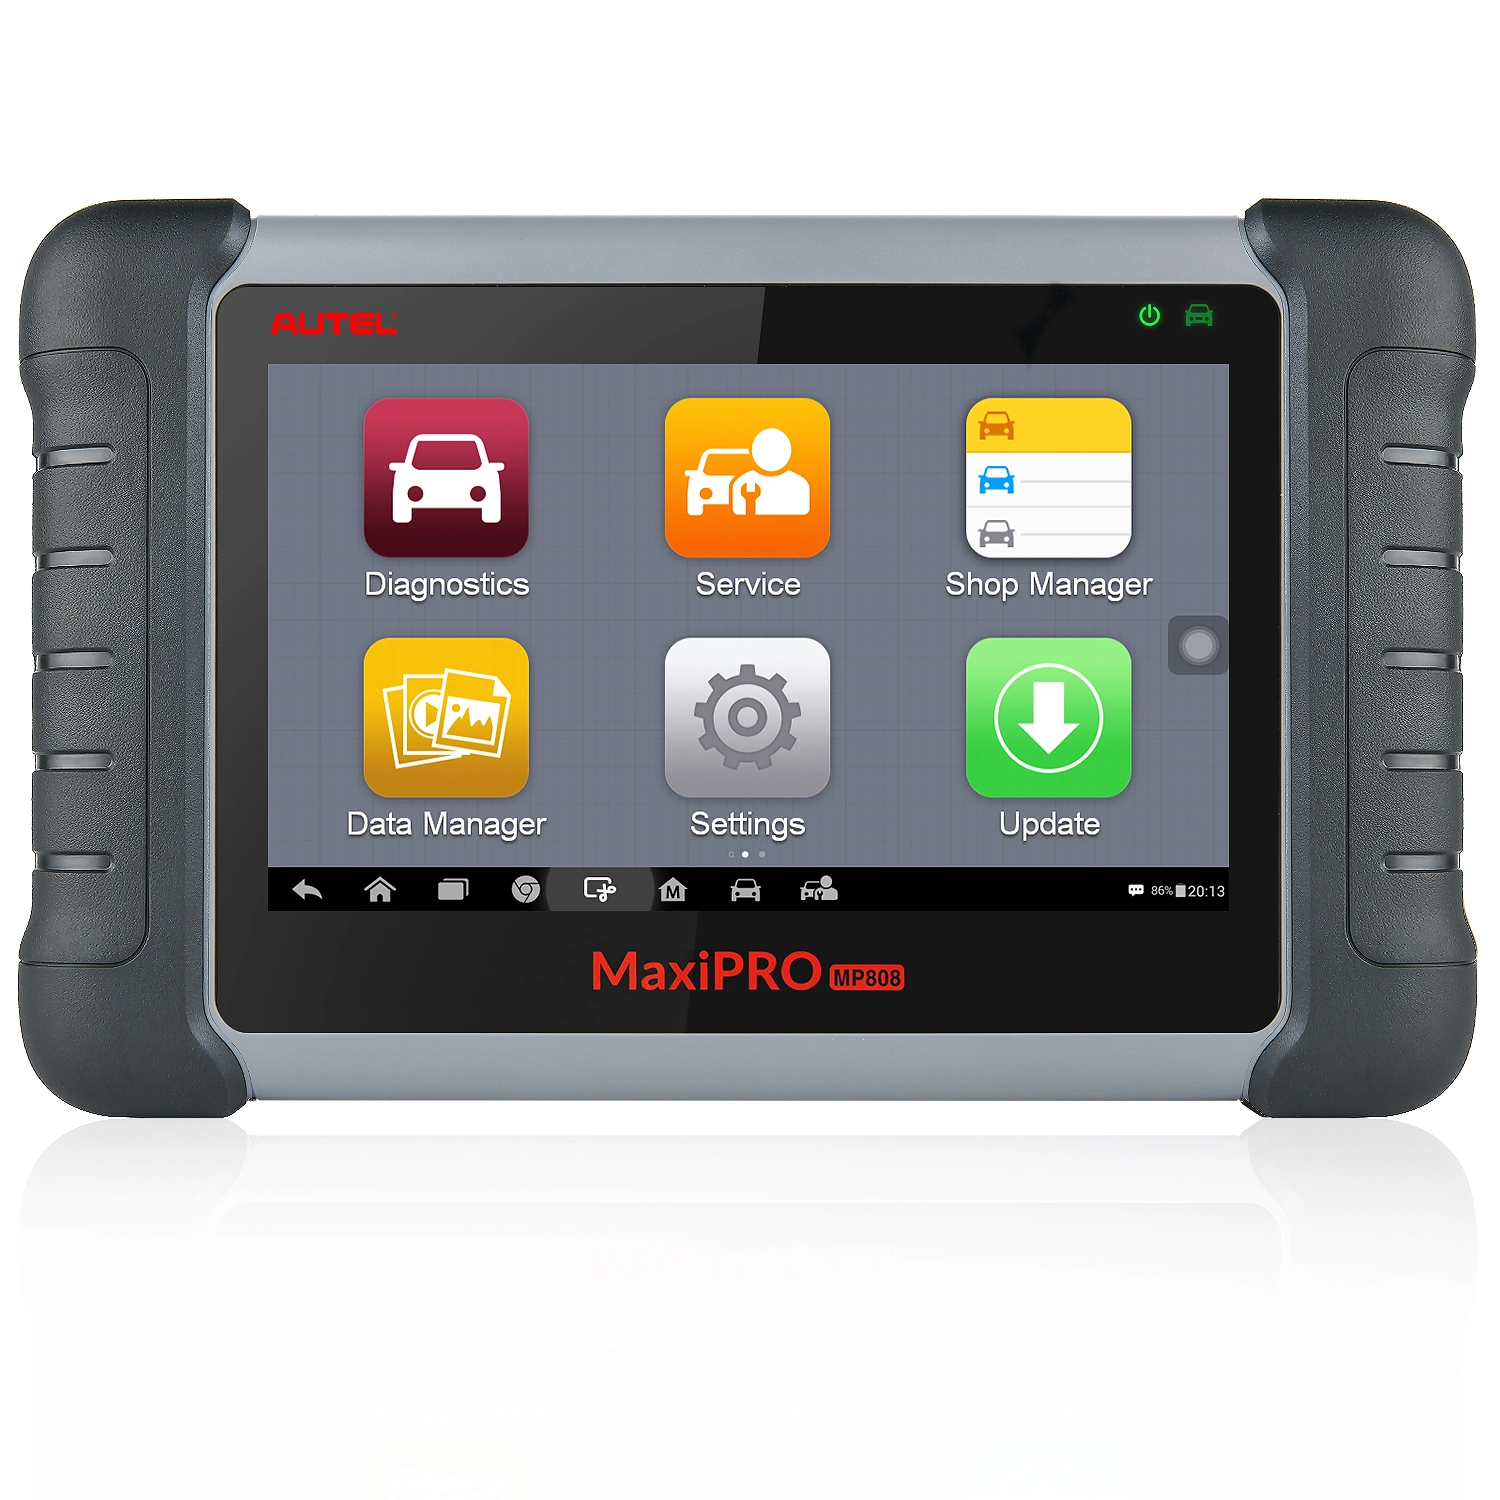 Autel maxipro mp808k mp808 automotive diagnostic tools updated version of ds808 vehicle diagnostic machine